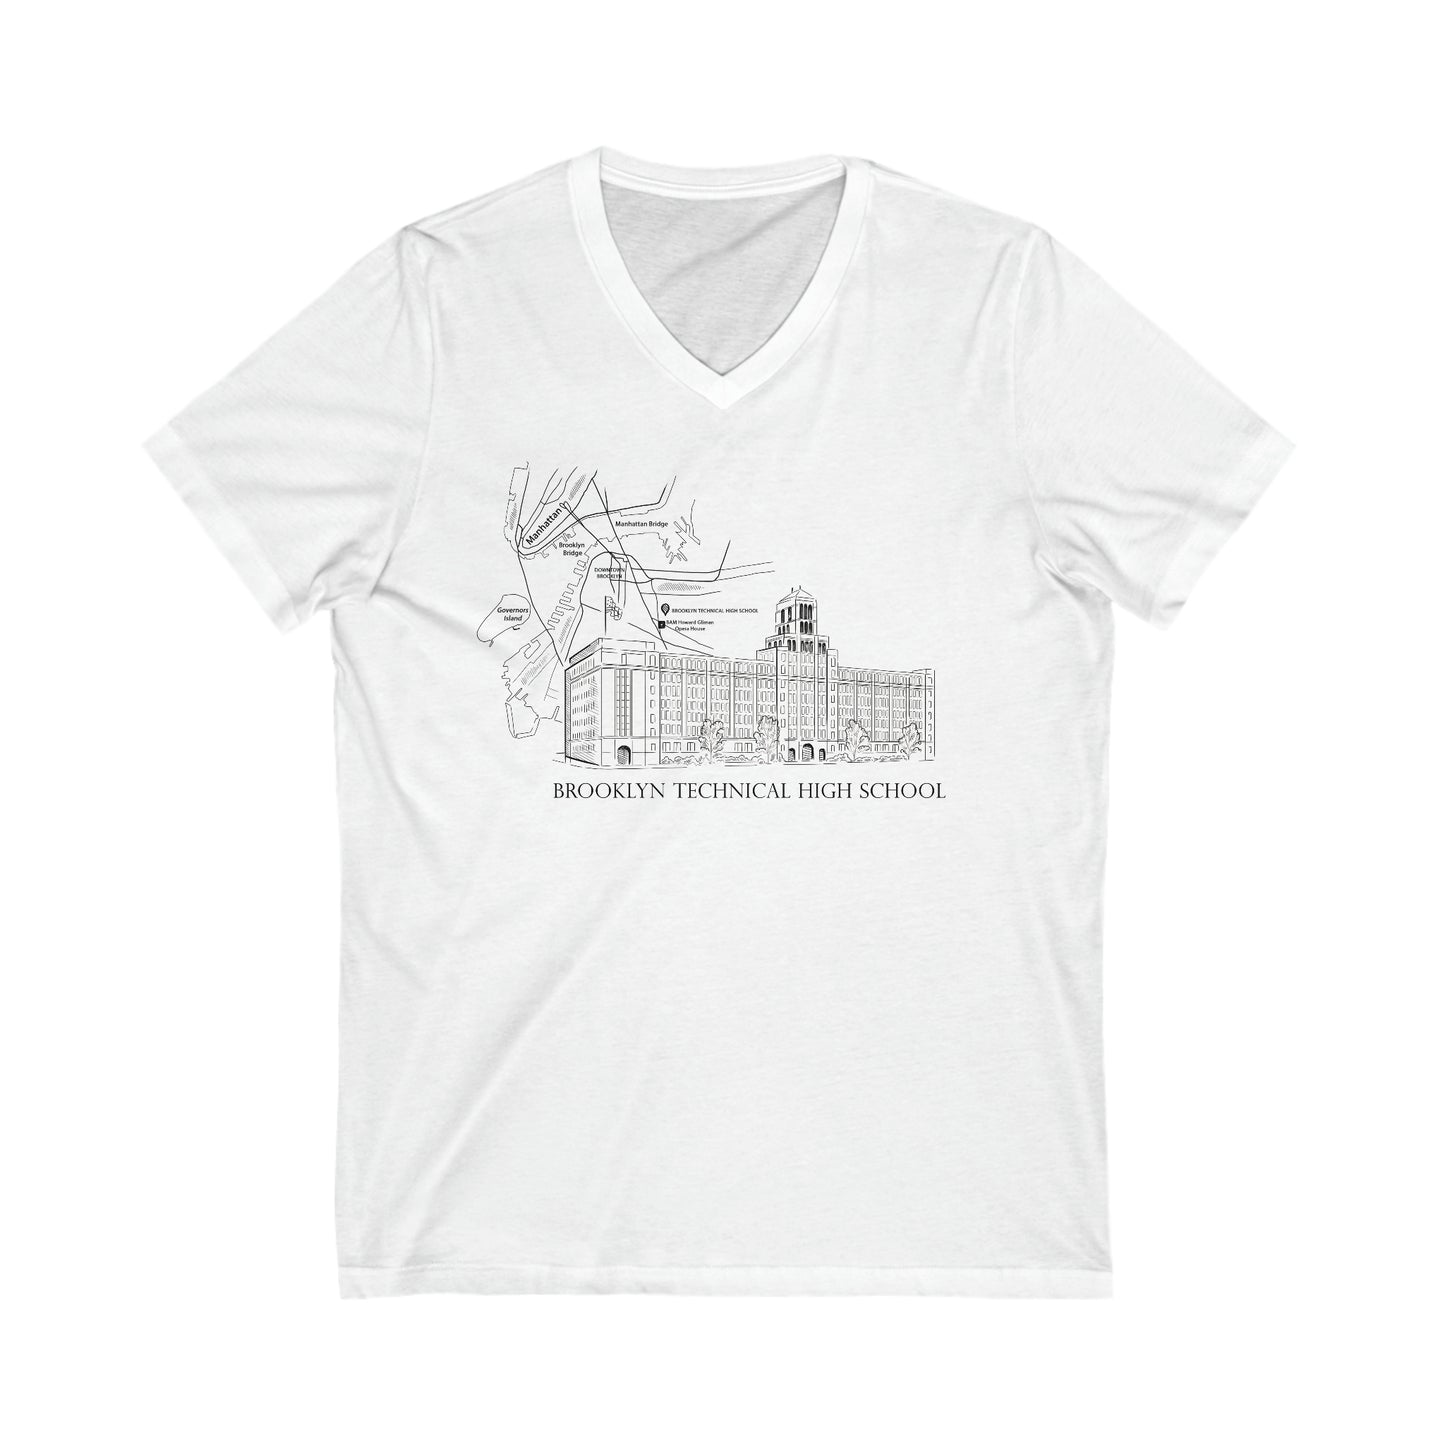 Boutique - Monochrome Building & Map - Men's V-Neck T-Shirt